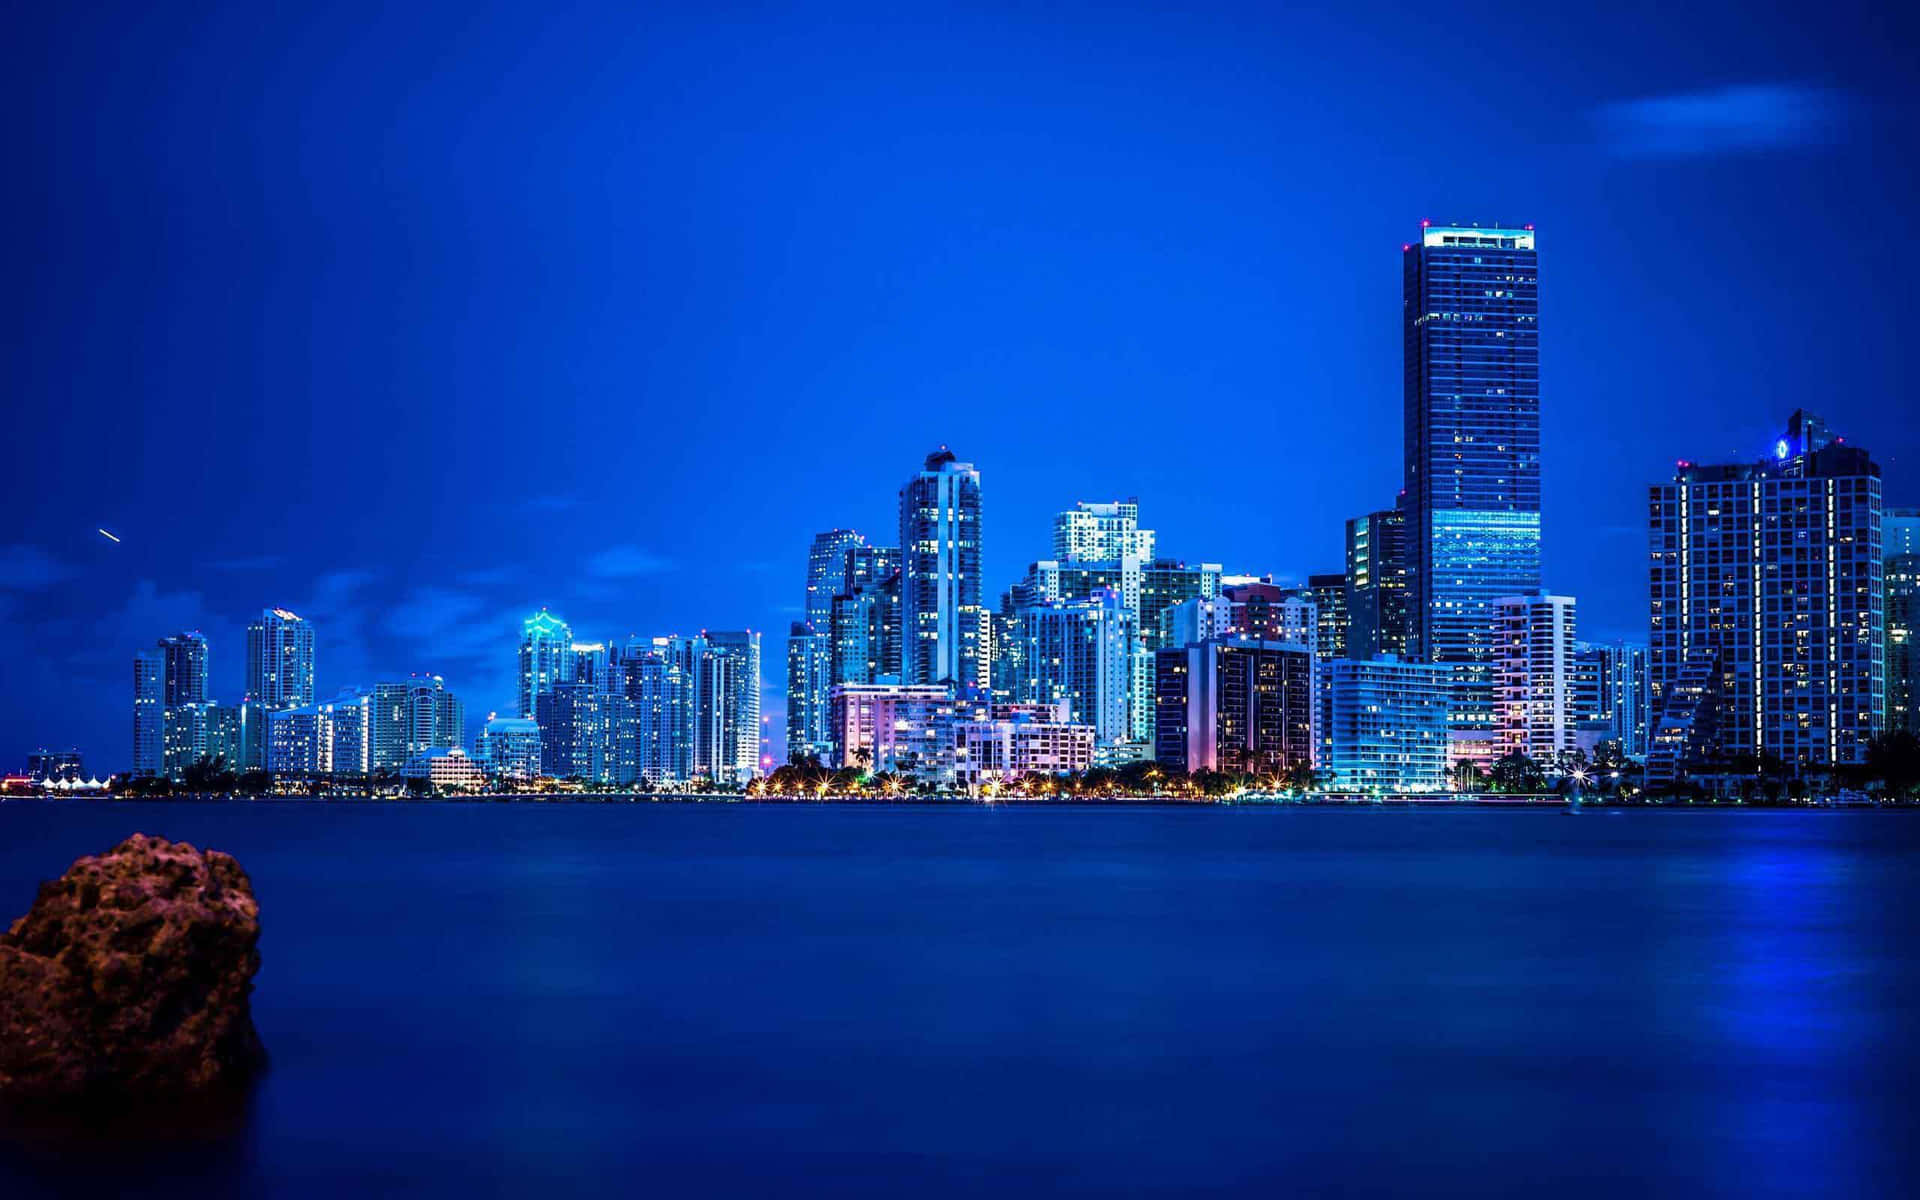 Benvenutinella Vibrante E Colorata Città Di Miami!